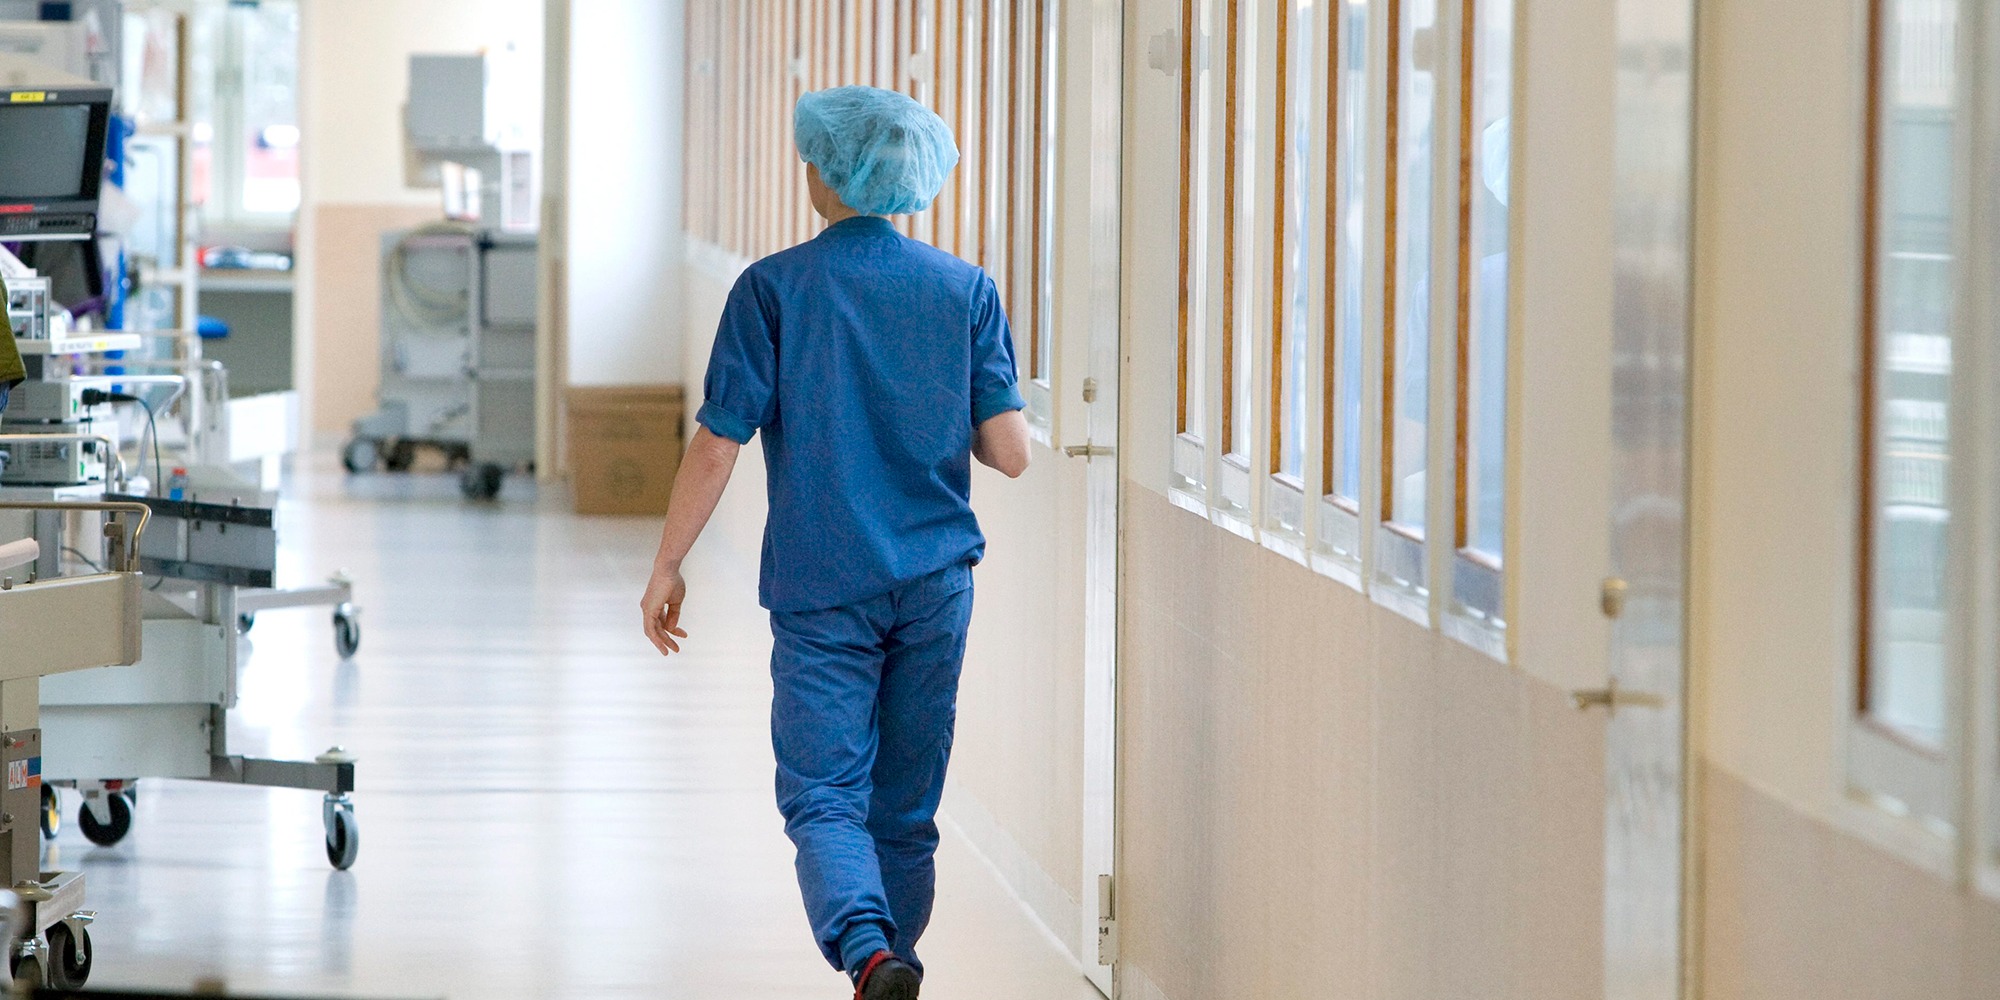 sjukhuskorridor där en person går bort från kameran, klädd i blå operationskläder. Tema vinterkräksjuka.